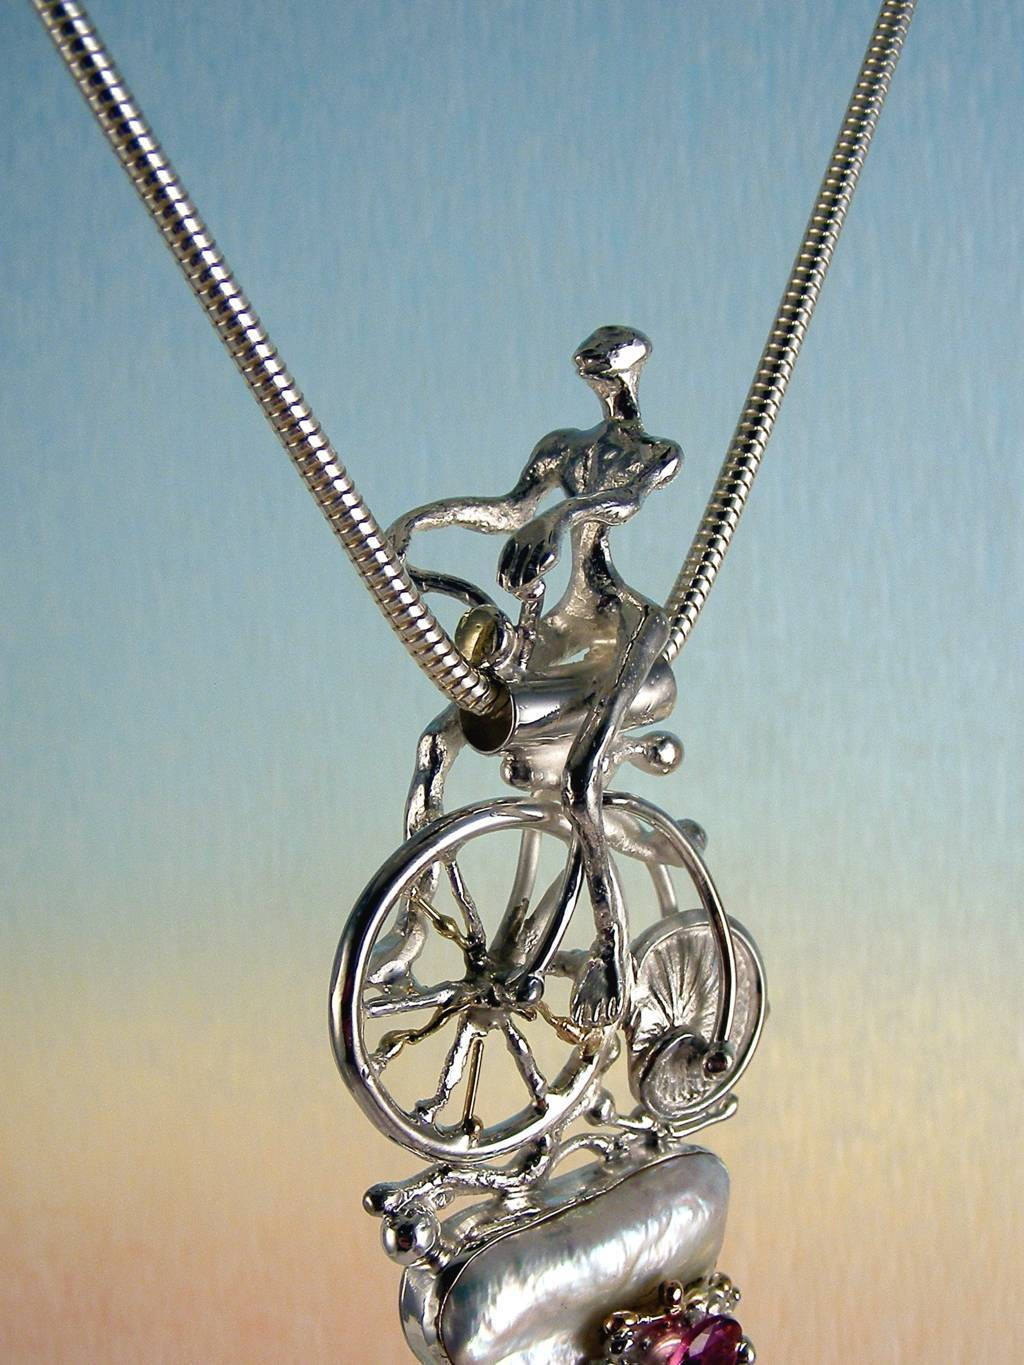 gregory pyra piro 自転車と置物の概念的なペンダント3896、歴史的な自転車のペンダント、シェルホイールペンダント刻まれた自転車、概念の刻まれた宝石、自転車と置物の概念のペンダント、琥珀とアメジストの概念のペンダント、ヨーロッパの宝石メーカーヨーロッパの手作りジュエリー、ヨーロッパ製のペンダント琥珀と スターリングシルバーとK14ゴールドのファセットアメジスト